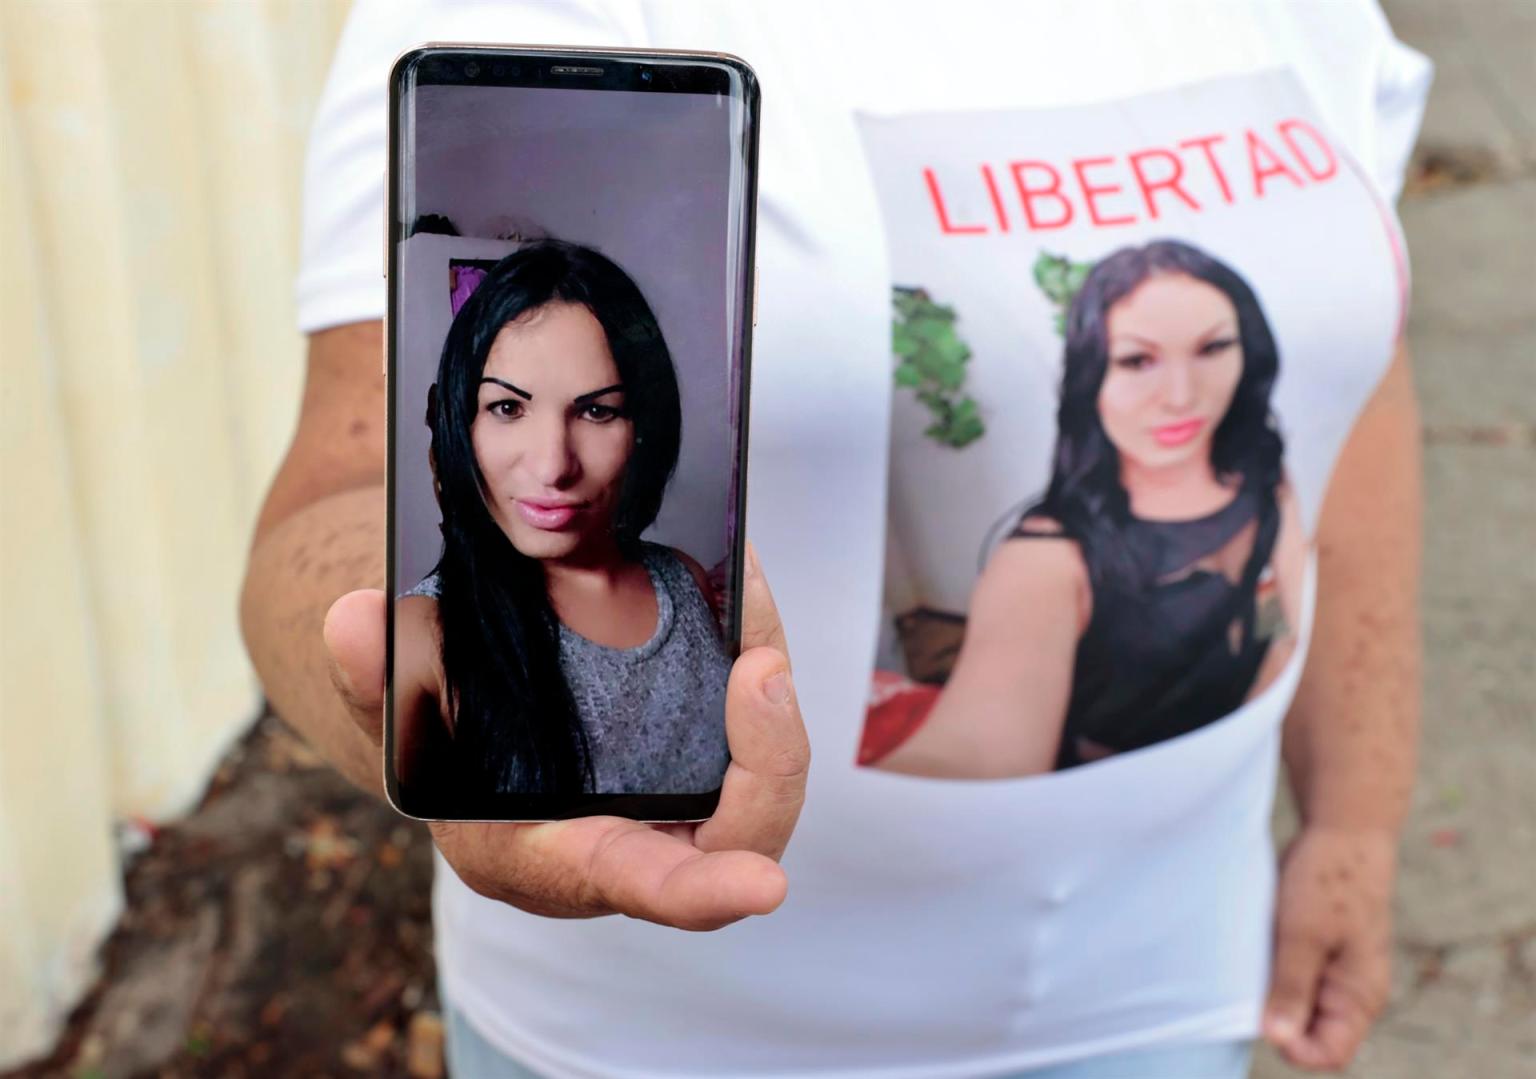 La madre de la trans cubana Brenda Díaz, detenida y enjuiciada por su participación en las protestas antigubernamentales del 11 de julio de 2021 en Cuba, muestra una foto de su hija. Foto: Ernesto Mastrascusa / EFE / Archivo.